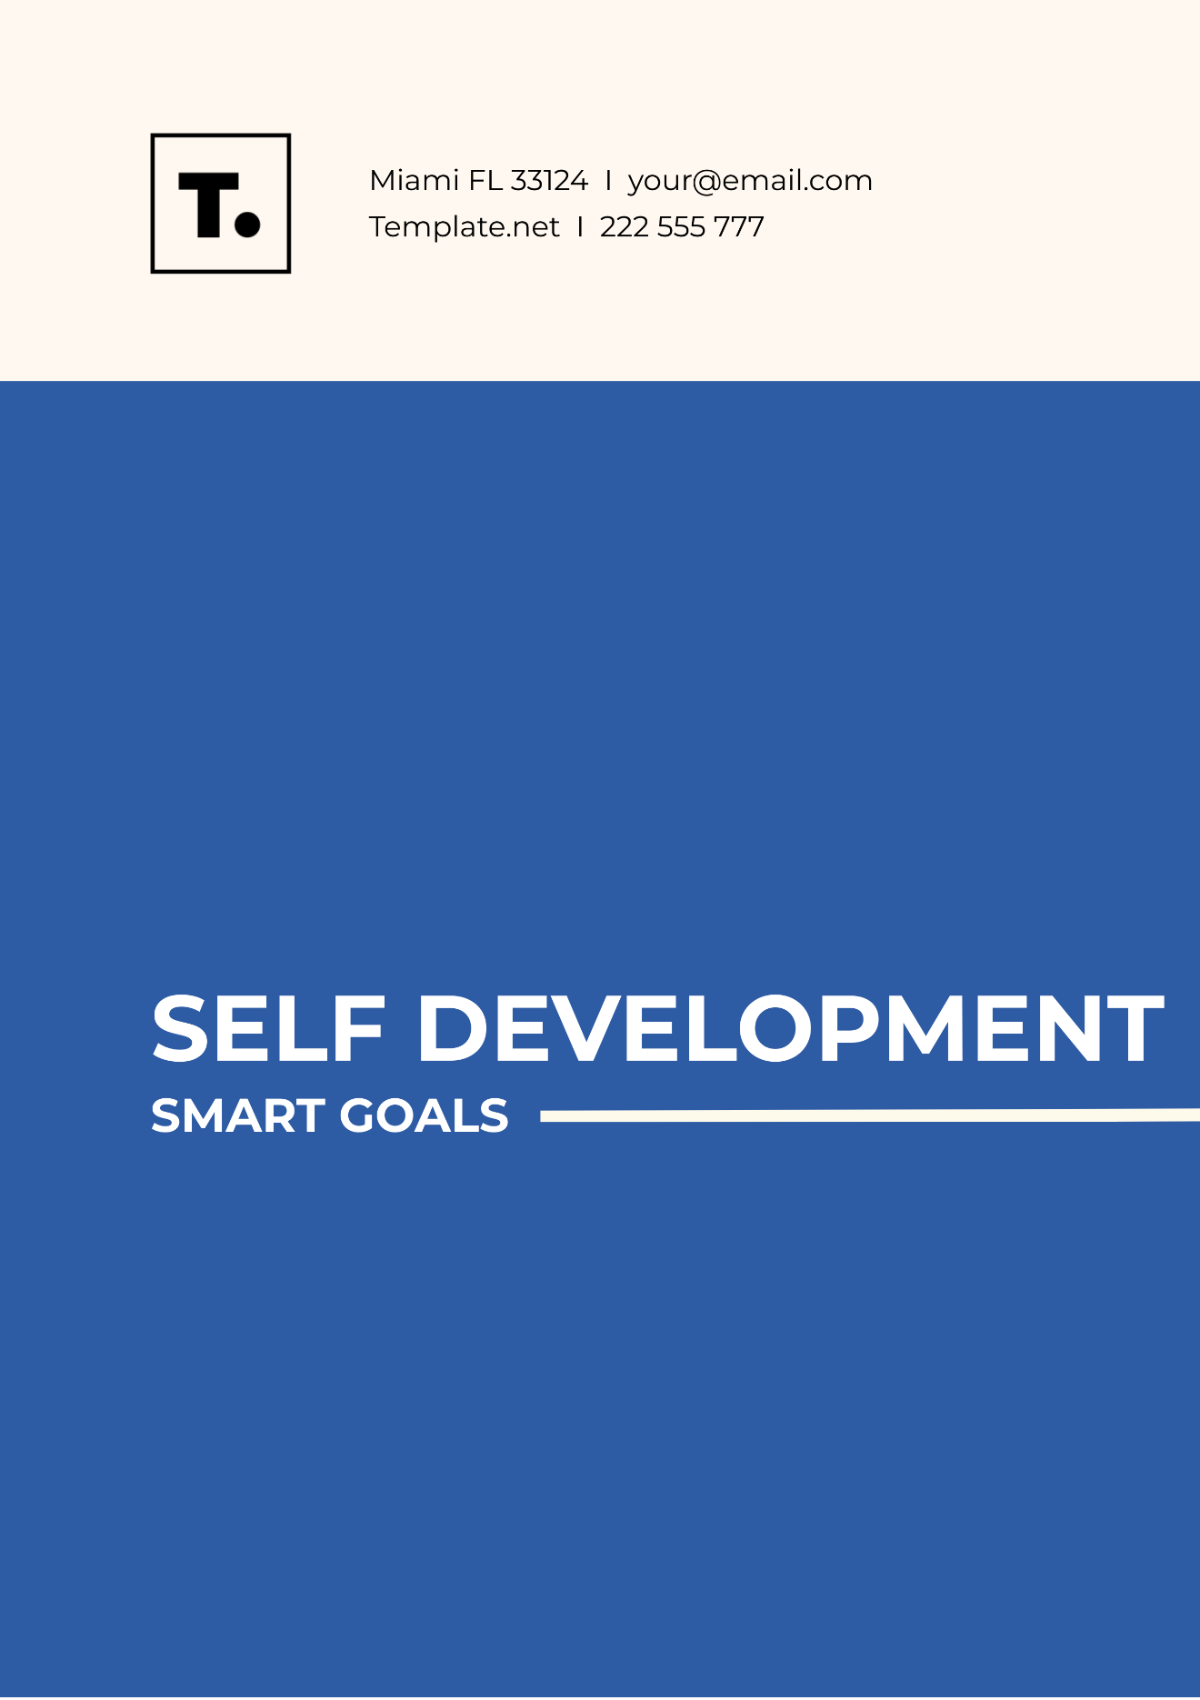 Self Development SMART Goals Template